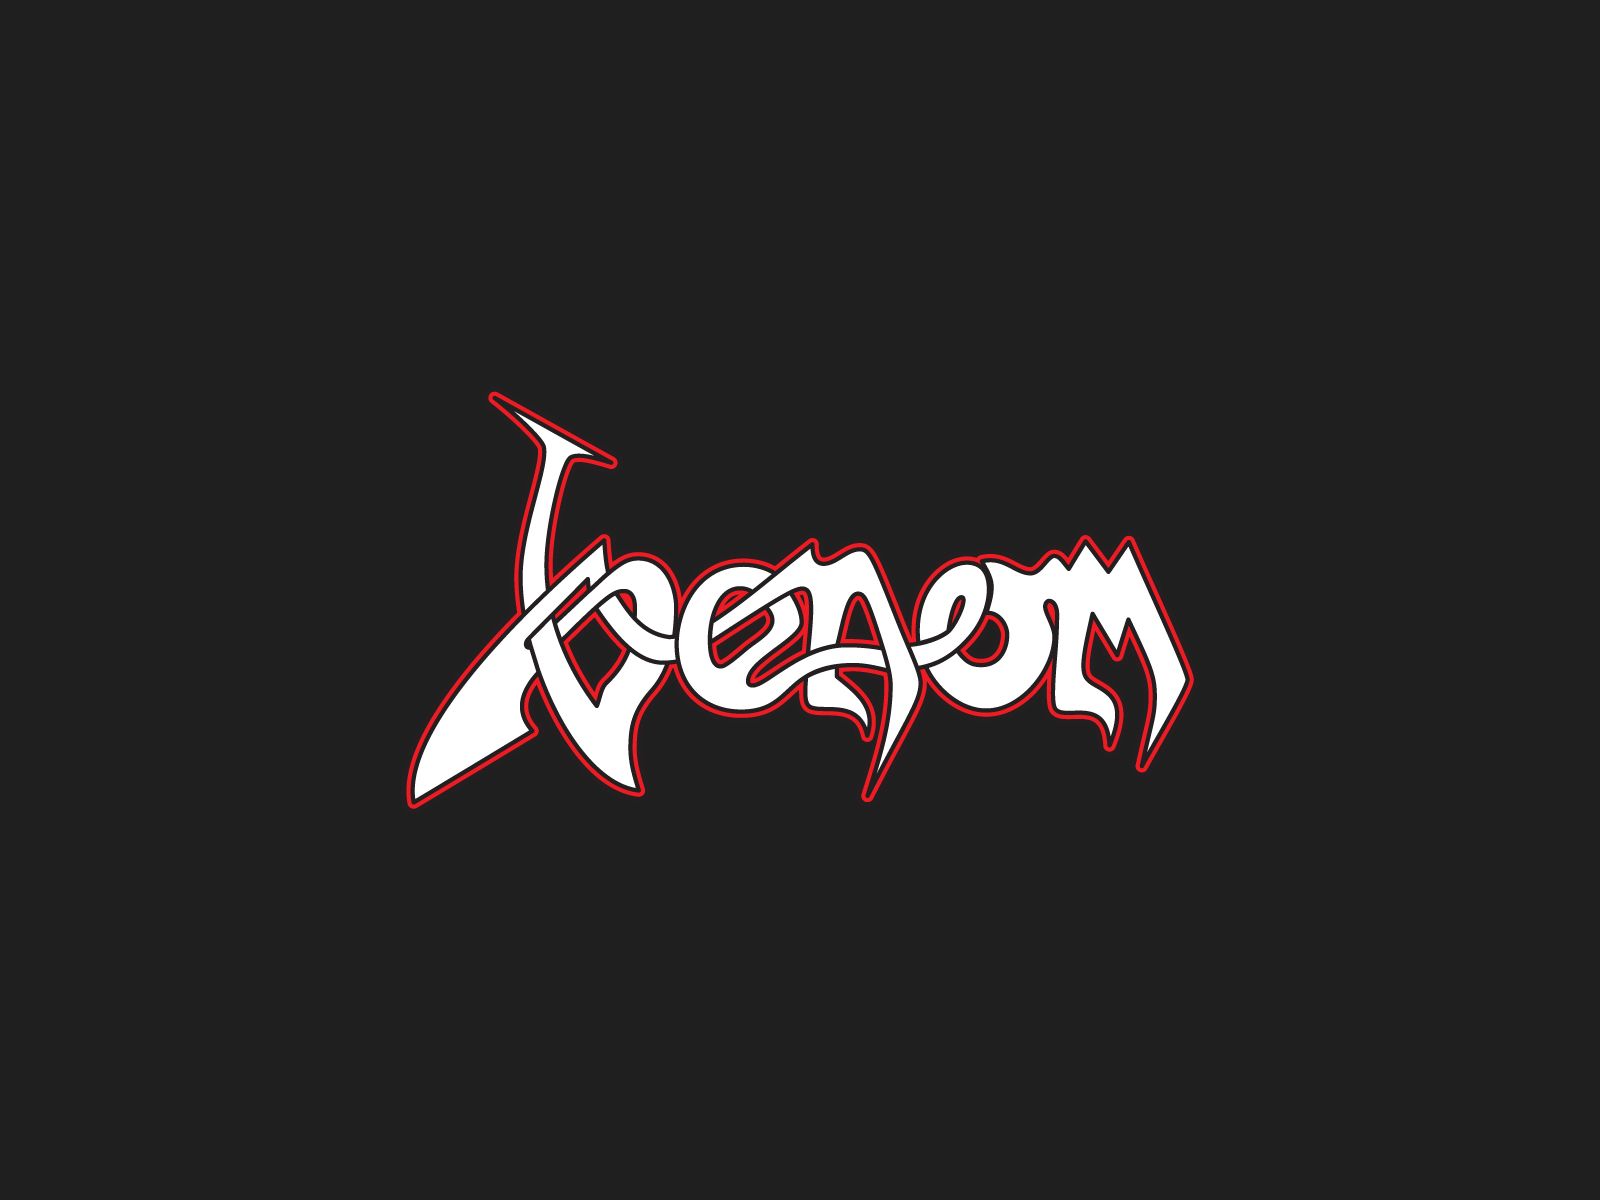 1600x1200 Venom logo and wallpaper. Band logos - Rock band logos, metal on WallpaperBat